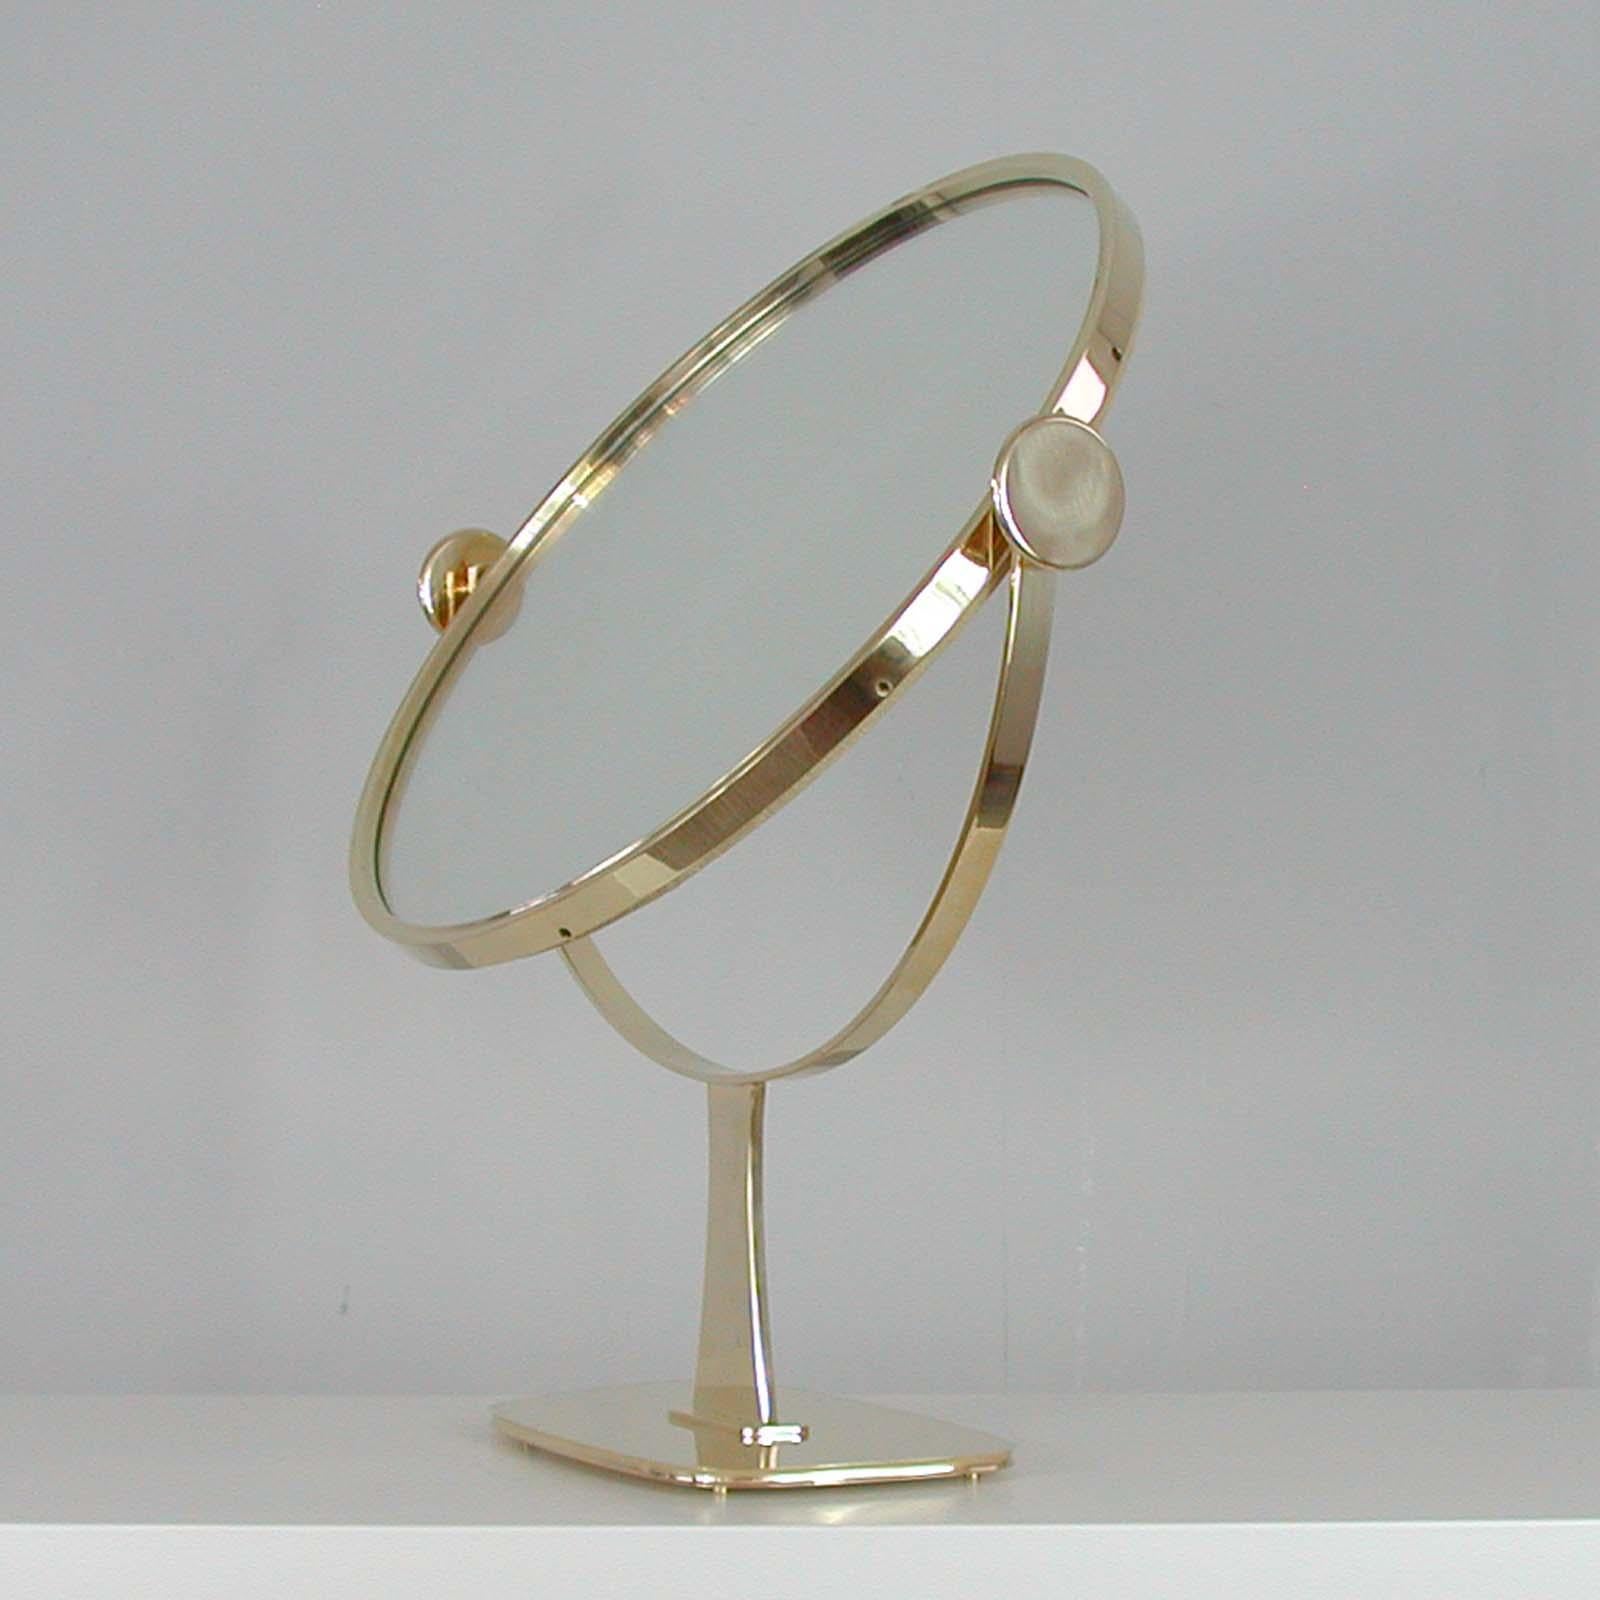 Midcentury German Brass Table Mirror by Vereinigte Werkstätten München, 1960s For Sale 12